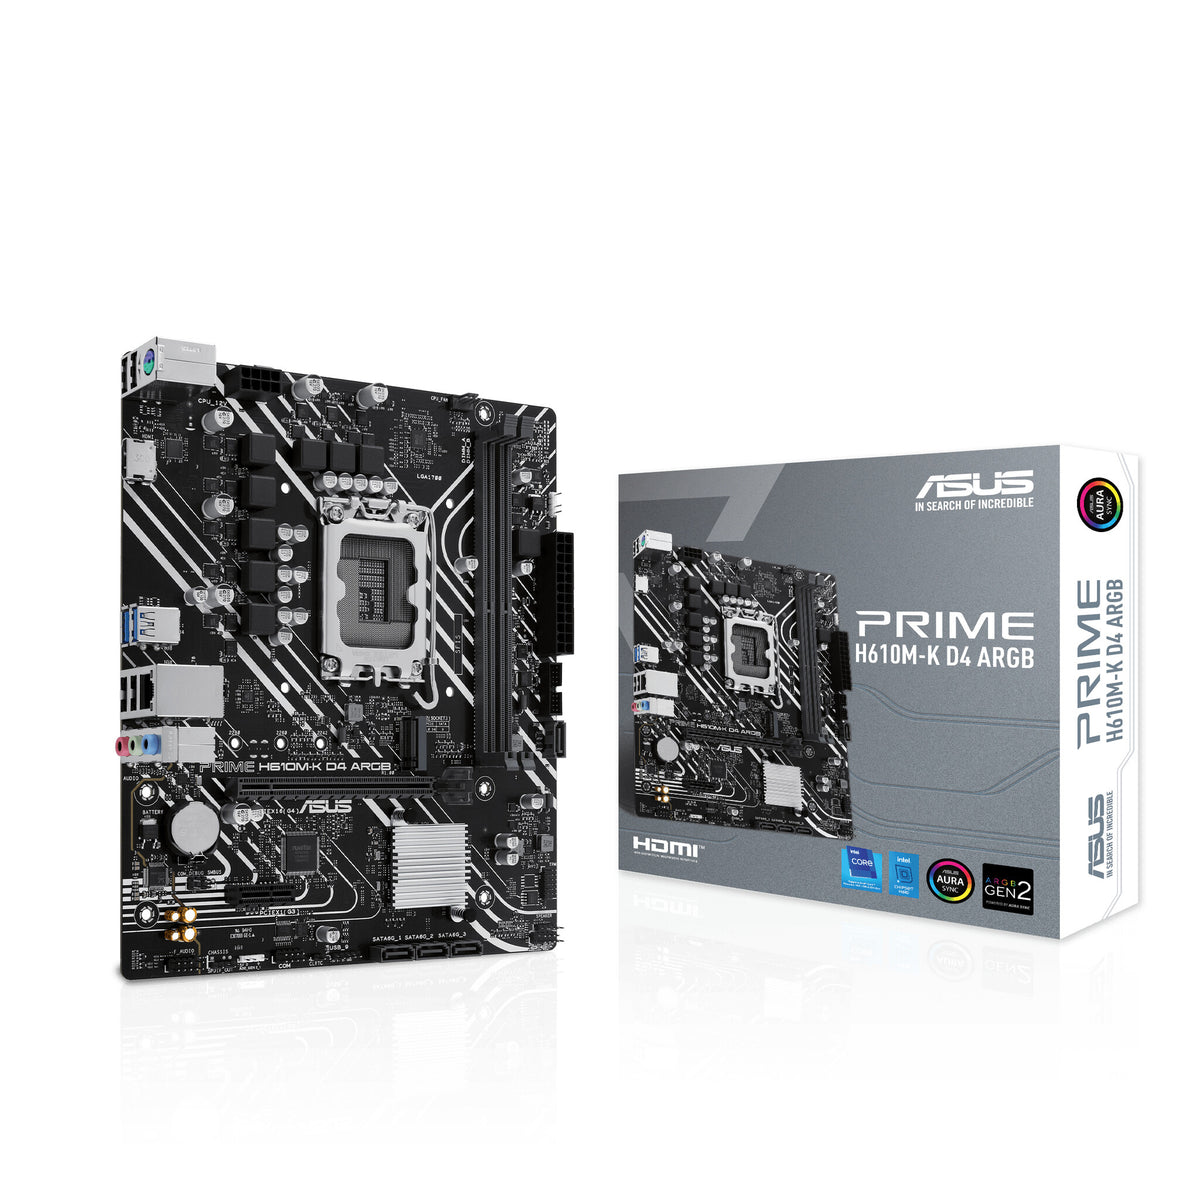 ASUS PRIME H610M-K D4 ARGB micro ATX motherboard - Intel H610 LGA 1700